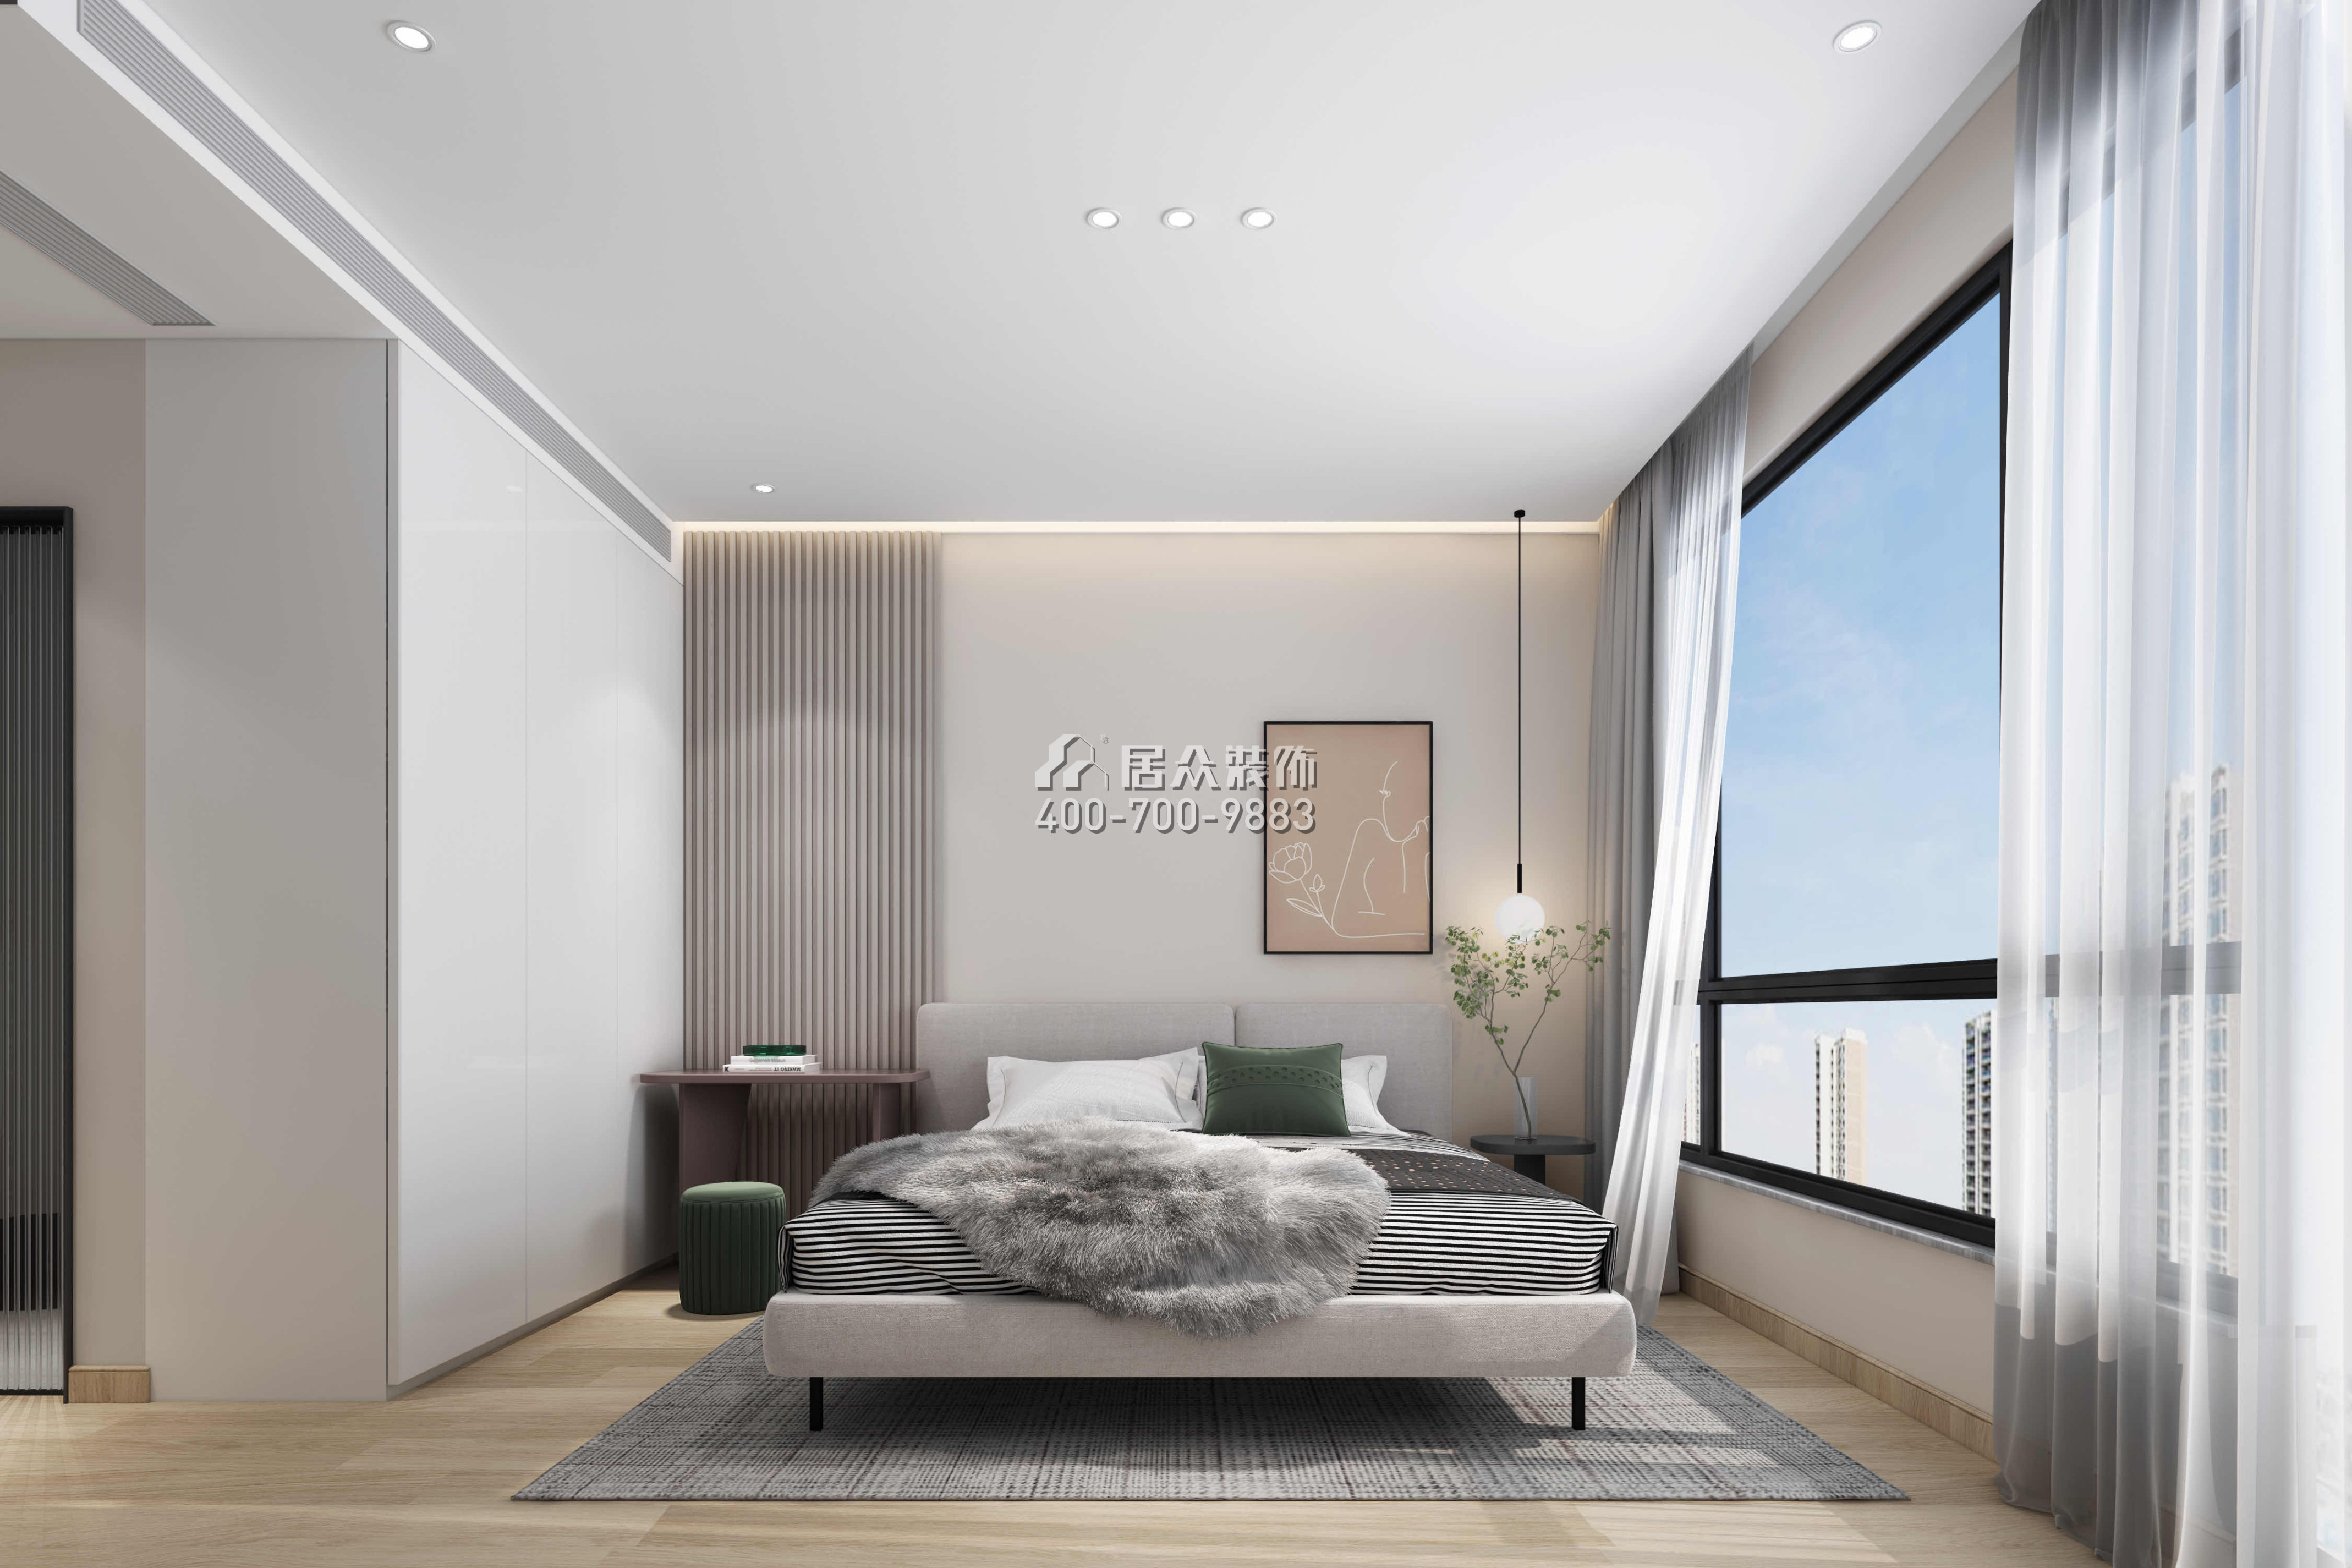 星河天地89平方米现代简约风格平层户型卧室装修效果图